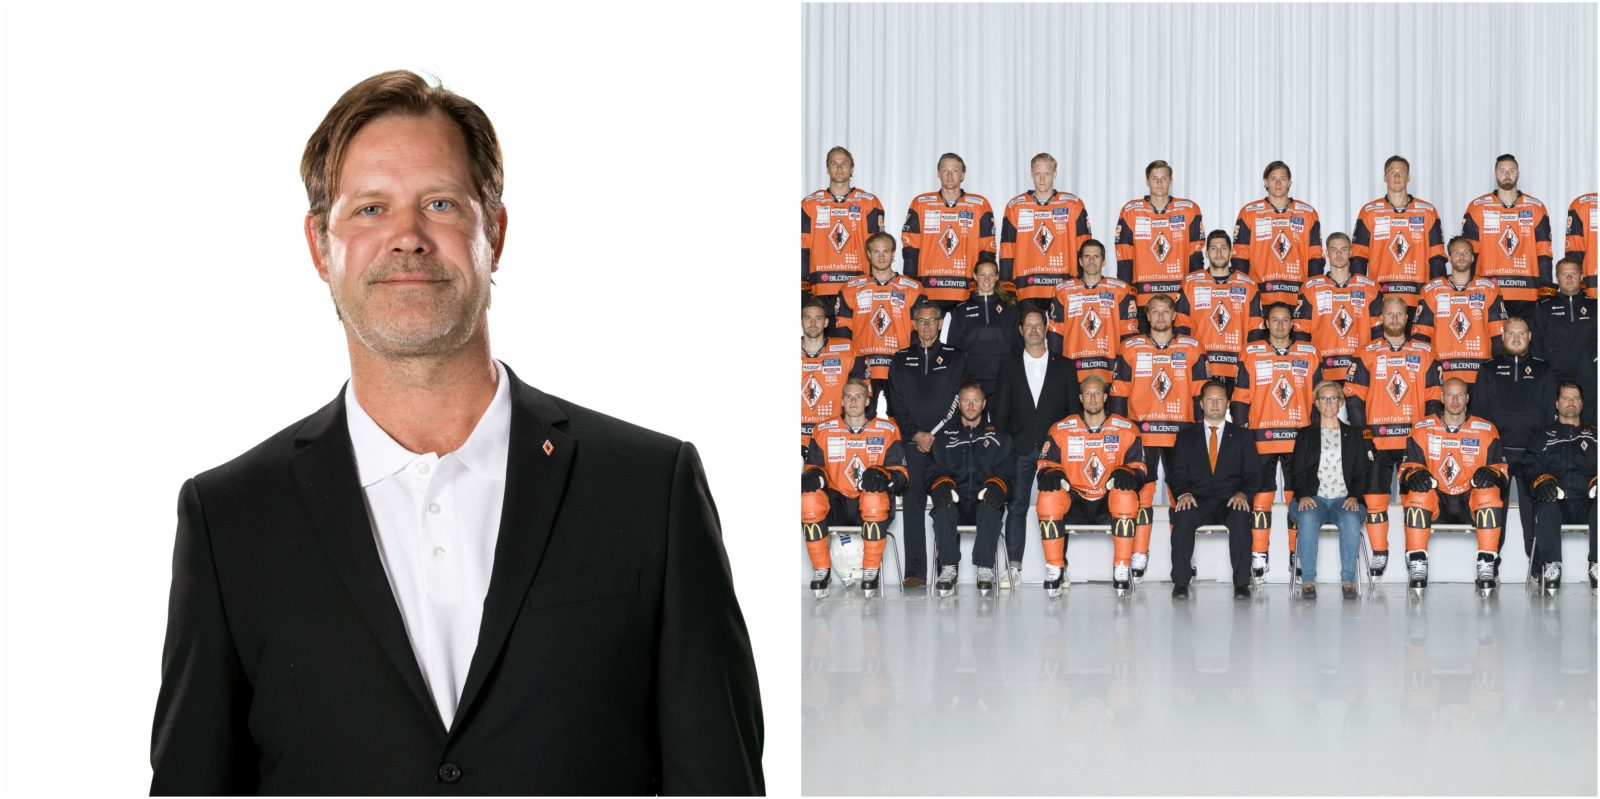 Karlskrona stänger av sportchefen efter fylleskandal